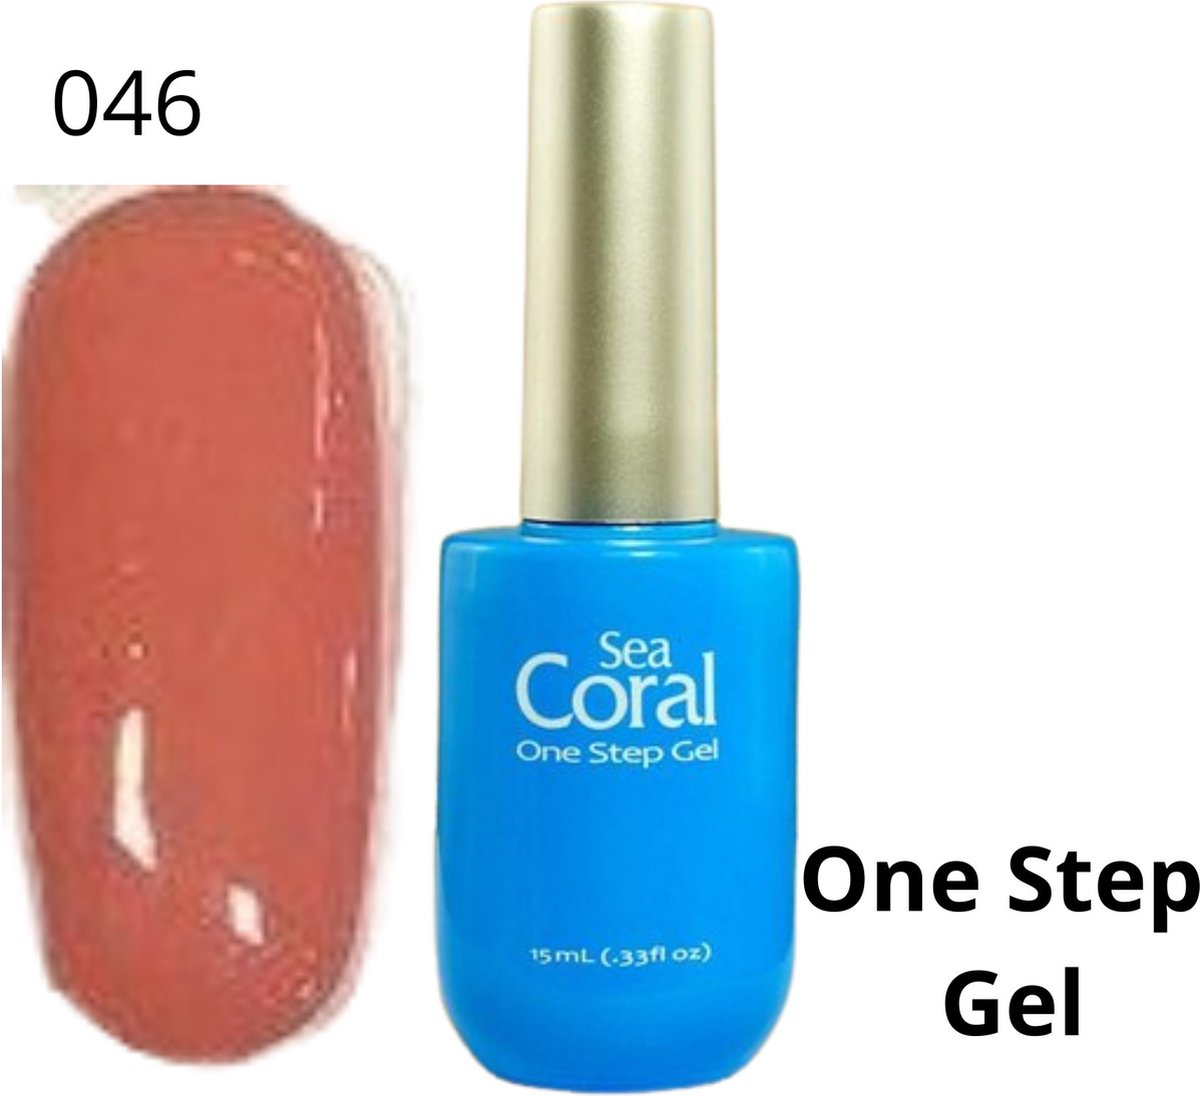 SeaCoral One Step No Wipe Gellak, Gel Nagellak, GelPolish, zonder kleeflaag, UV en LED, kleur 046